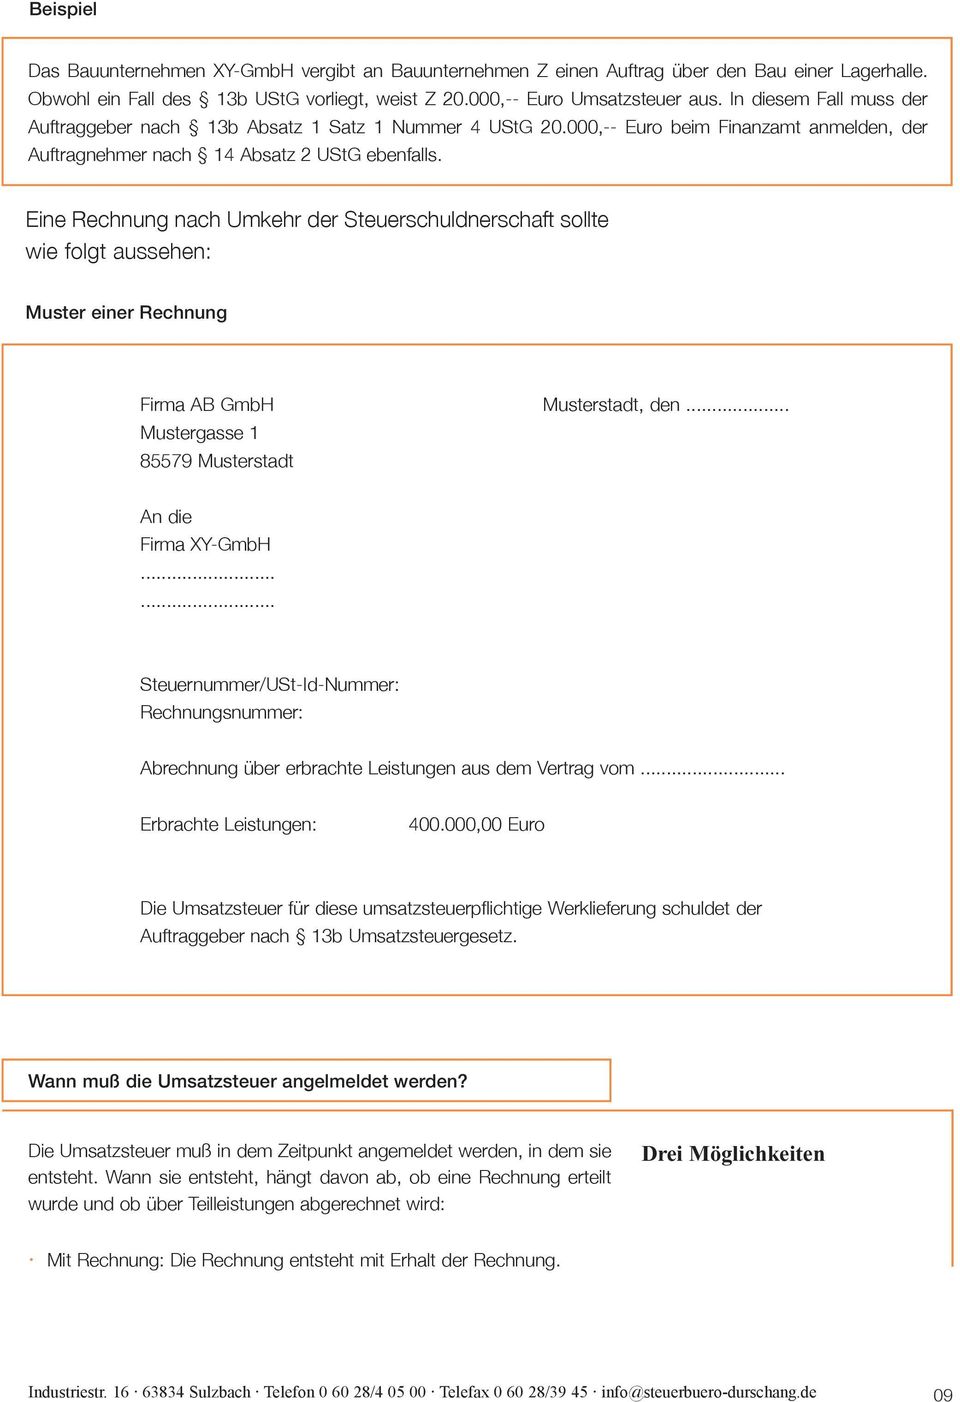 Eine Rechnung nach Umkehr der Steuerschuldnerschaft sollte wie folgt aussehen: Muster einer Rechnung Firma AB GmbH Musterstadt, den... Mustergasse 1 85579 Musterstadt An die Firma XY-GmbH.